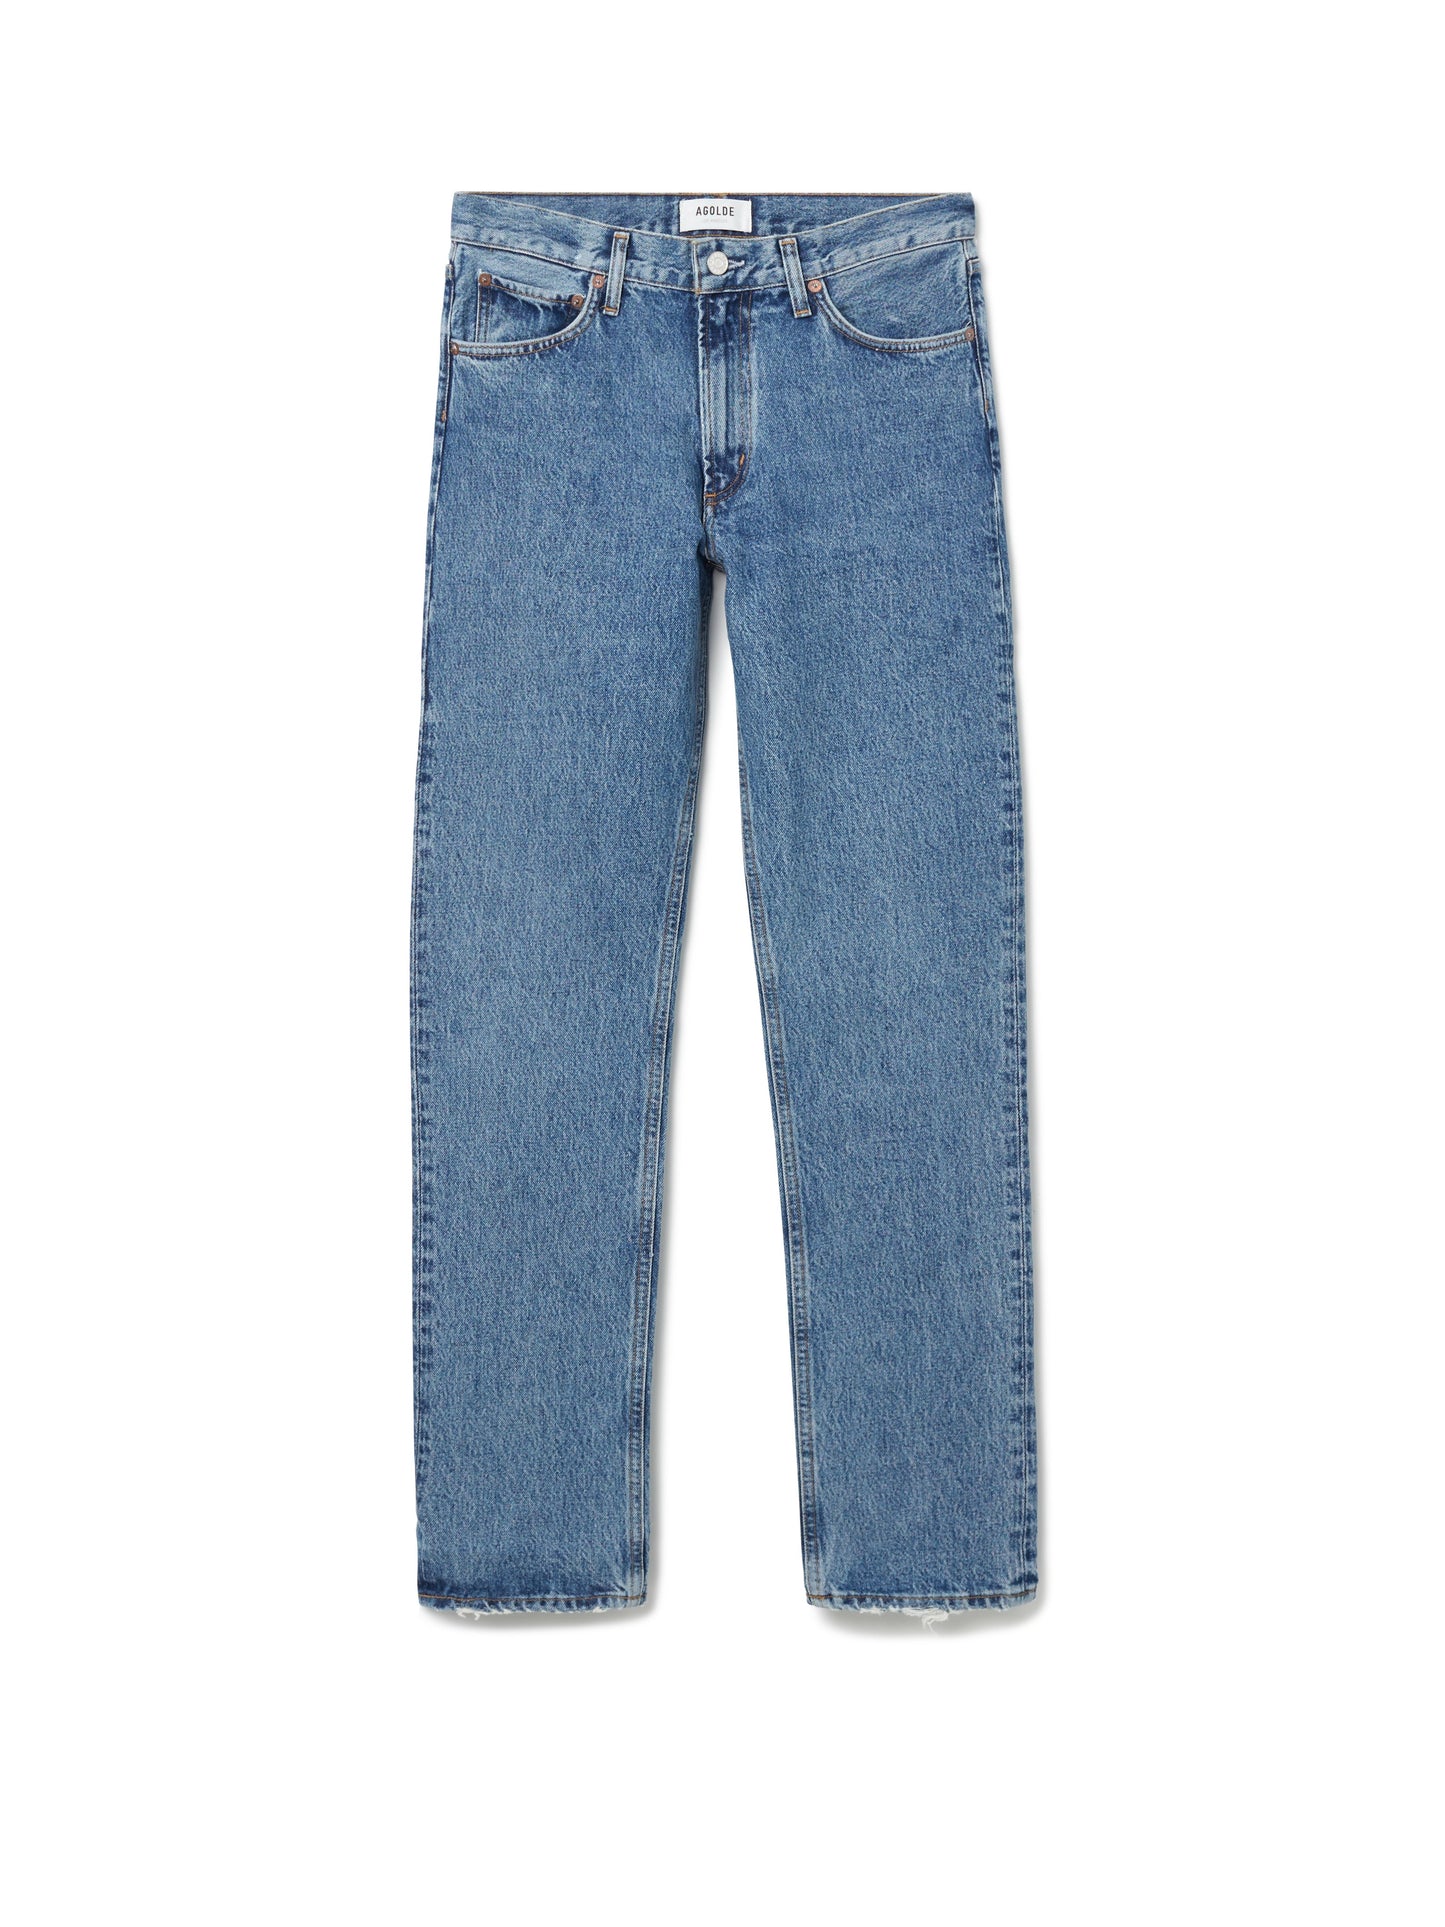 Agolde - Lyle Rigid Jeans Jeans AGOLDE DENIM 25 